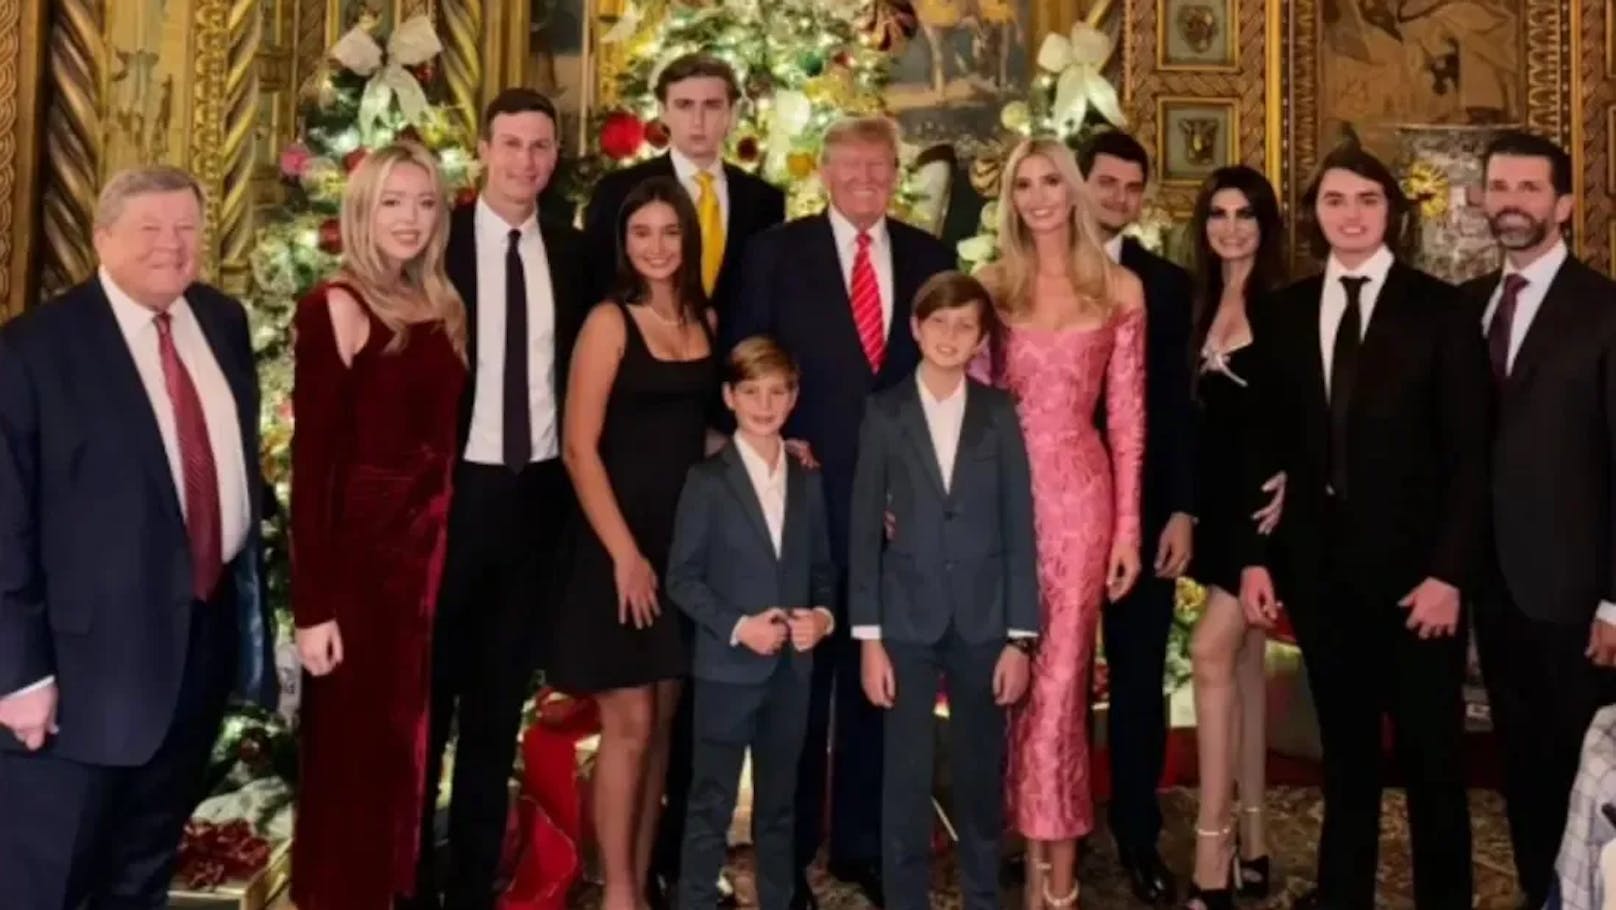 Das Weihnachtsfoto, auf dem Melania Trump fehlt, gab Anlass zu Spekulationen.